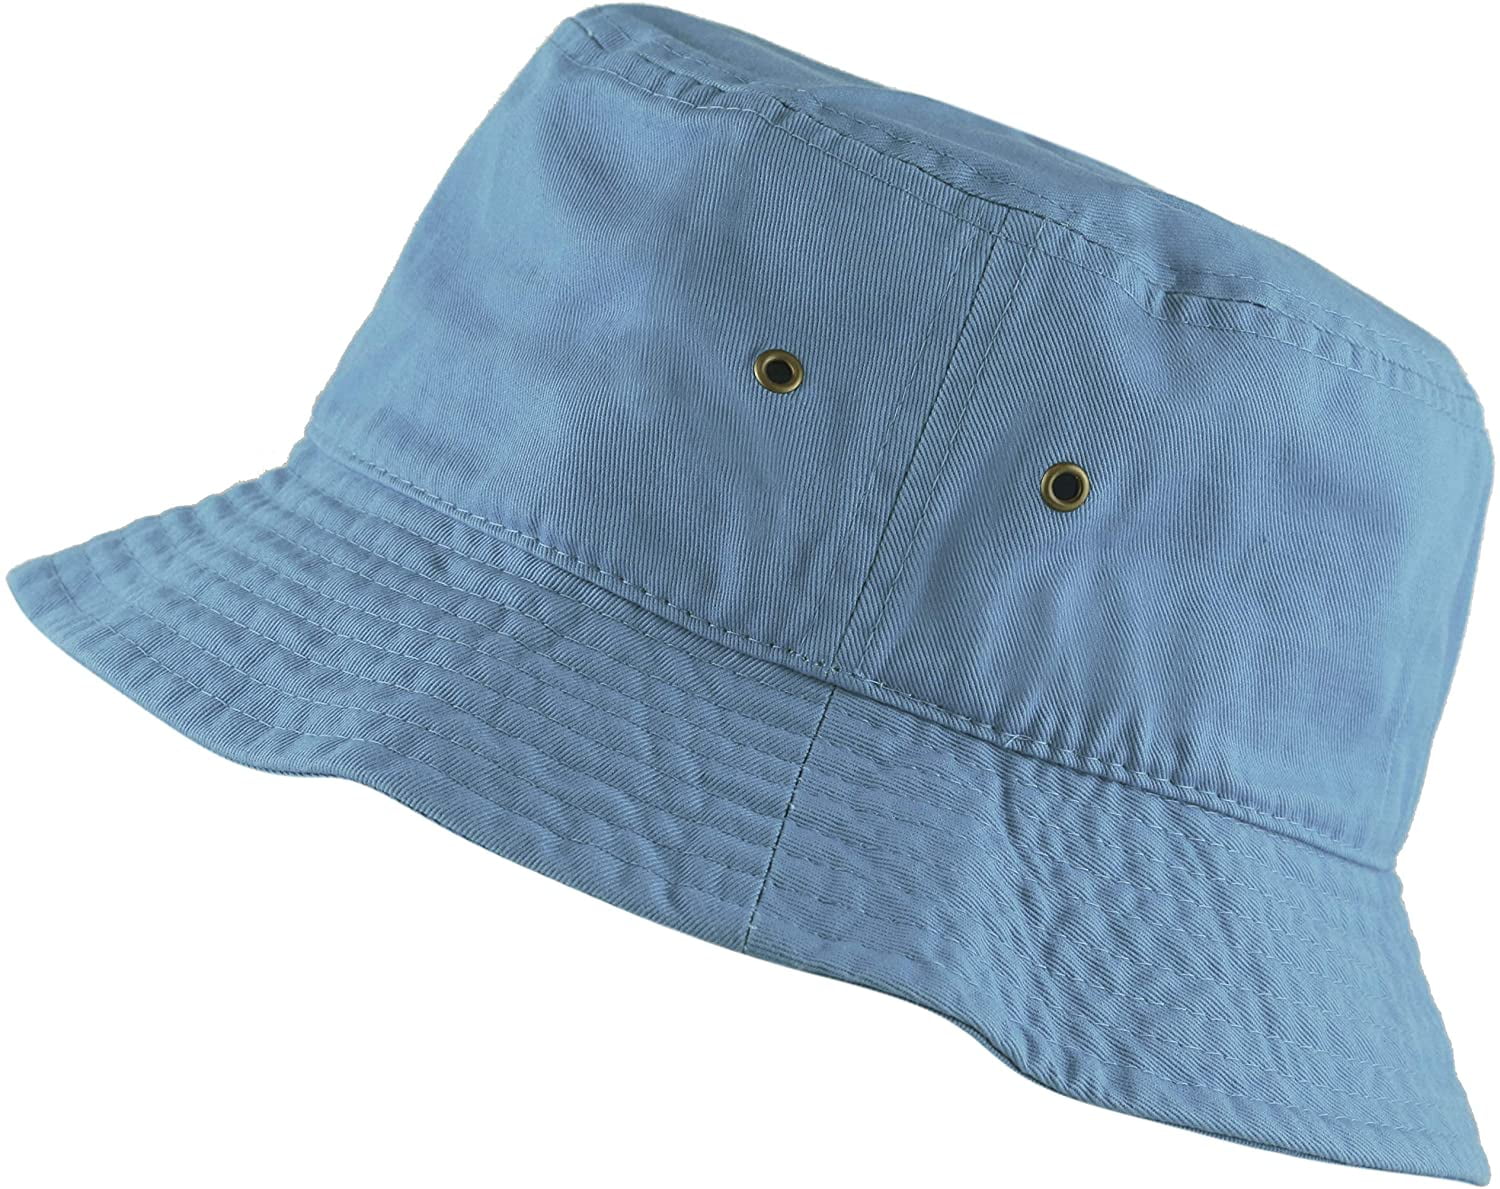 Bucket Hat - Unisex 100% Cotton & Denim UPF 50 Packable Summer Travel Beach  Sun Hat 